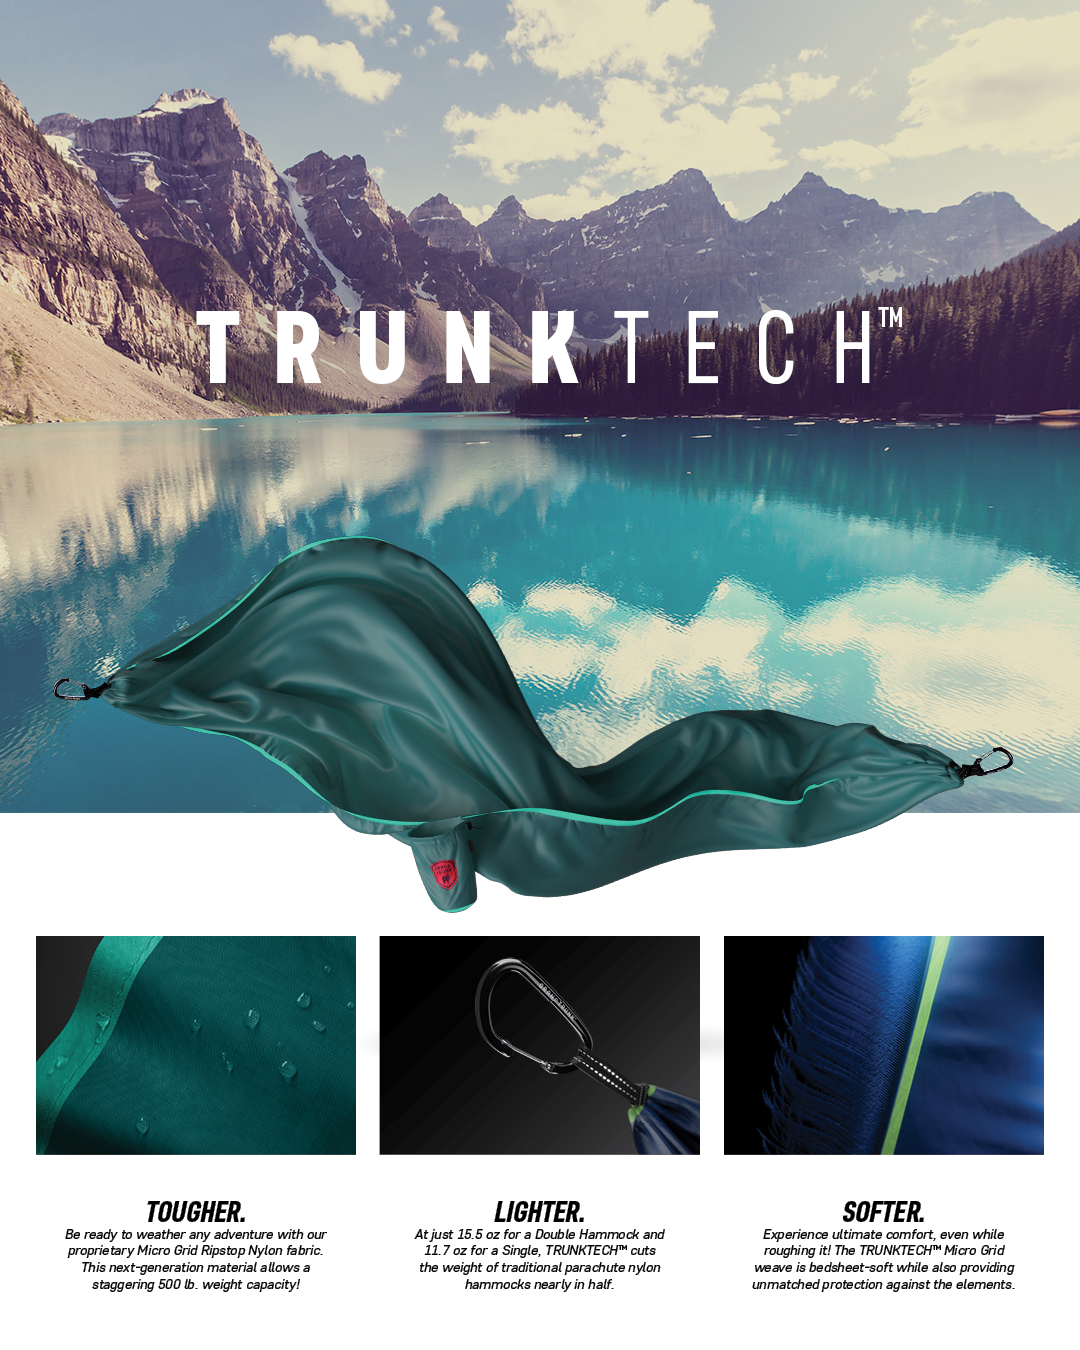 Trunk Tech hammocks by Grand Trunk